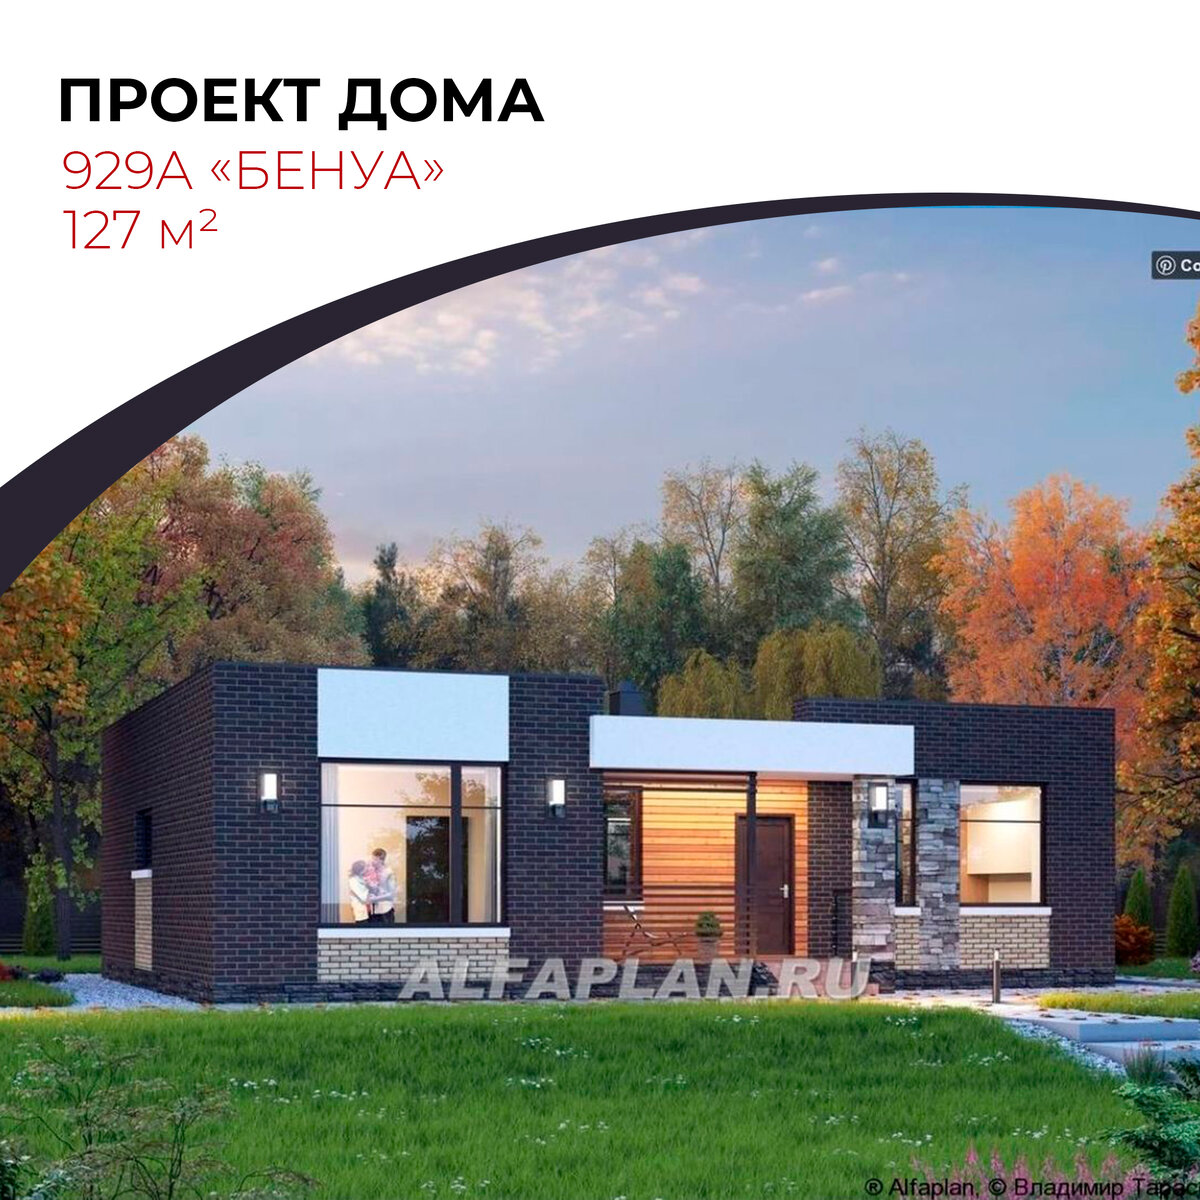 📌Сохраните в свою подборку одноэтажный коттедж 929A «БЕНУА» с плоской крышей и удобной планировкой. 👍 Подписывайтесь на наш канал Яндекс ДЗЕН. У нас – только уникальные авторские проекты домов.